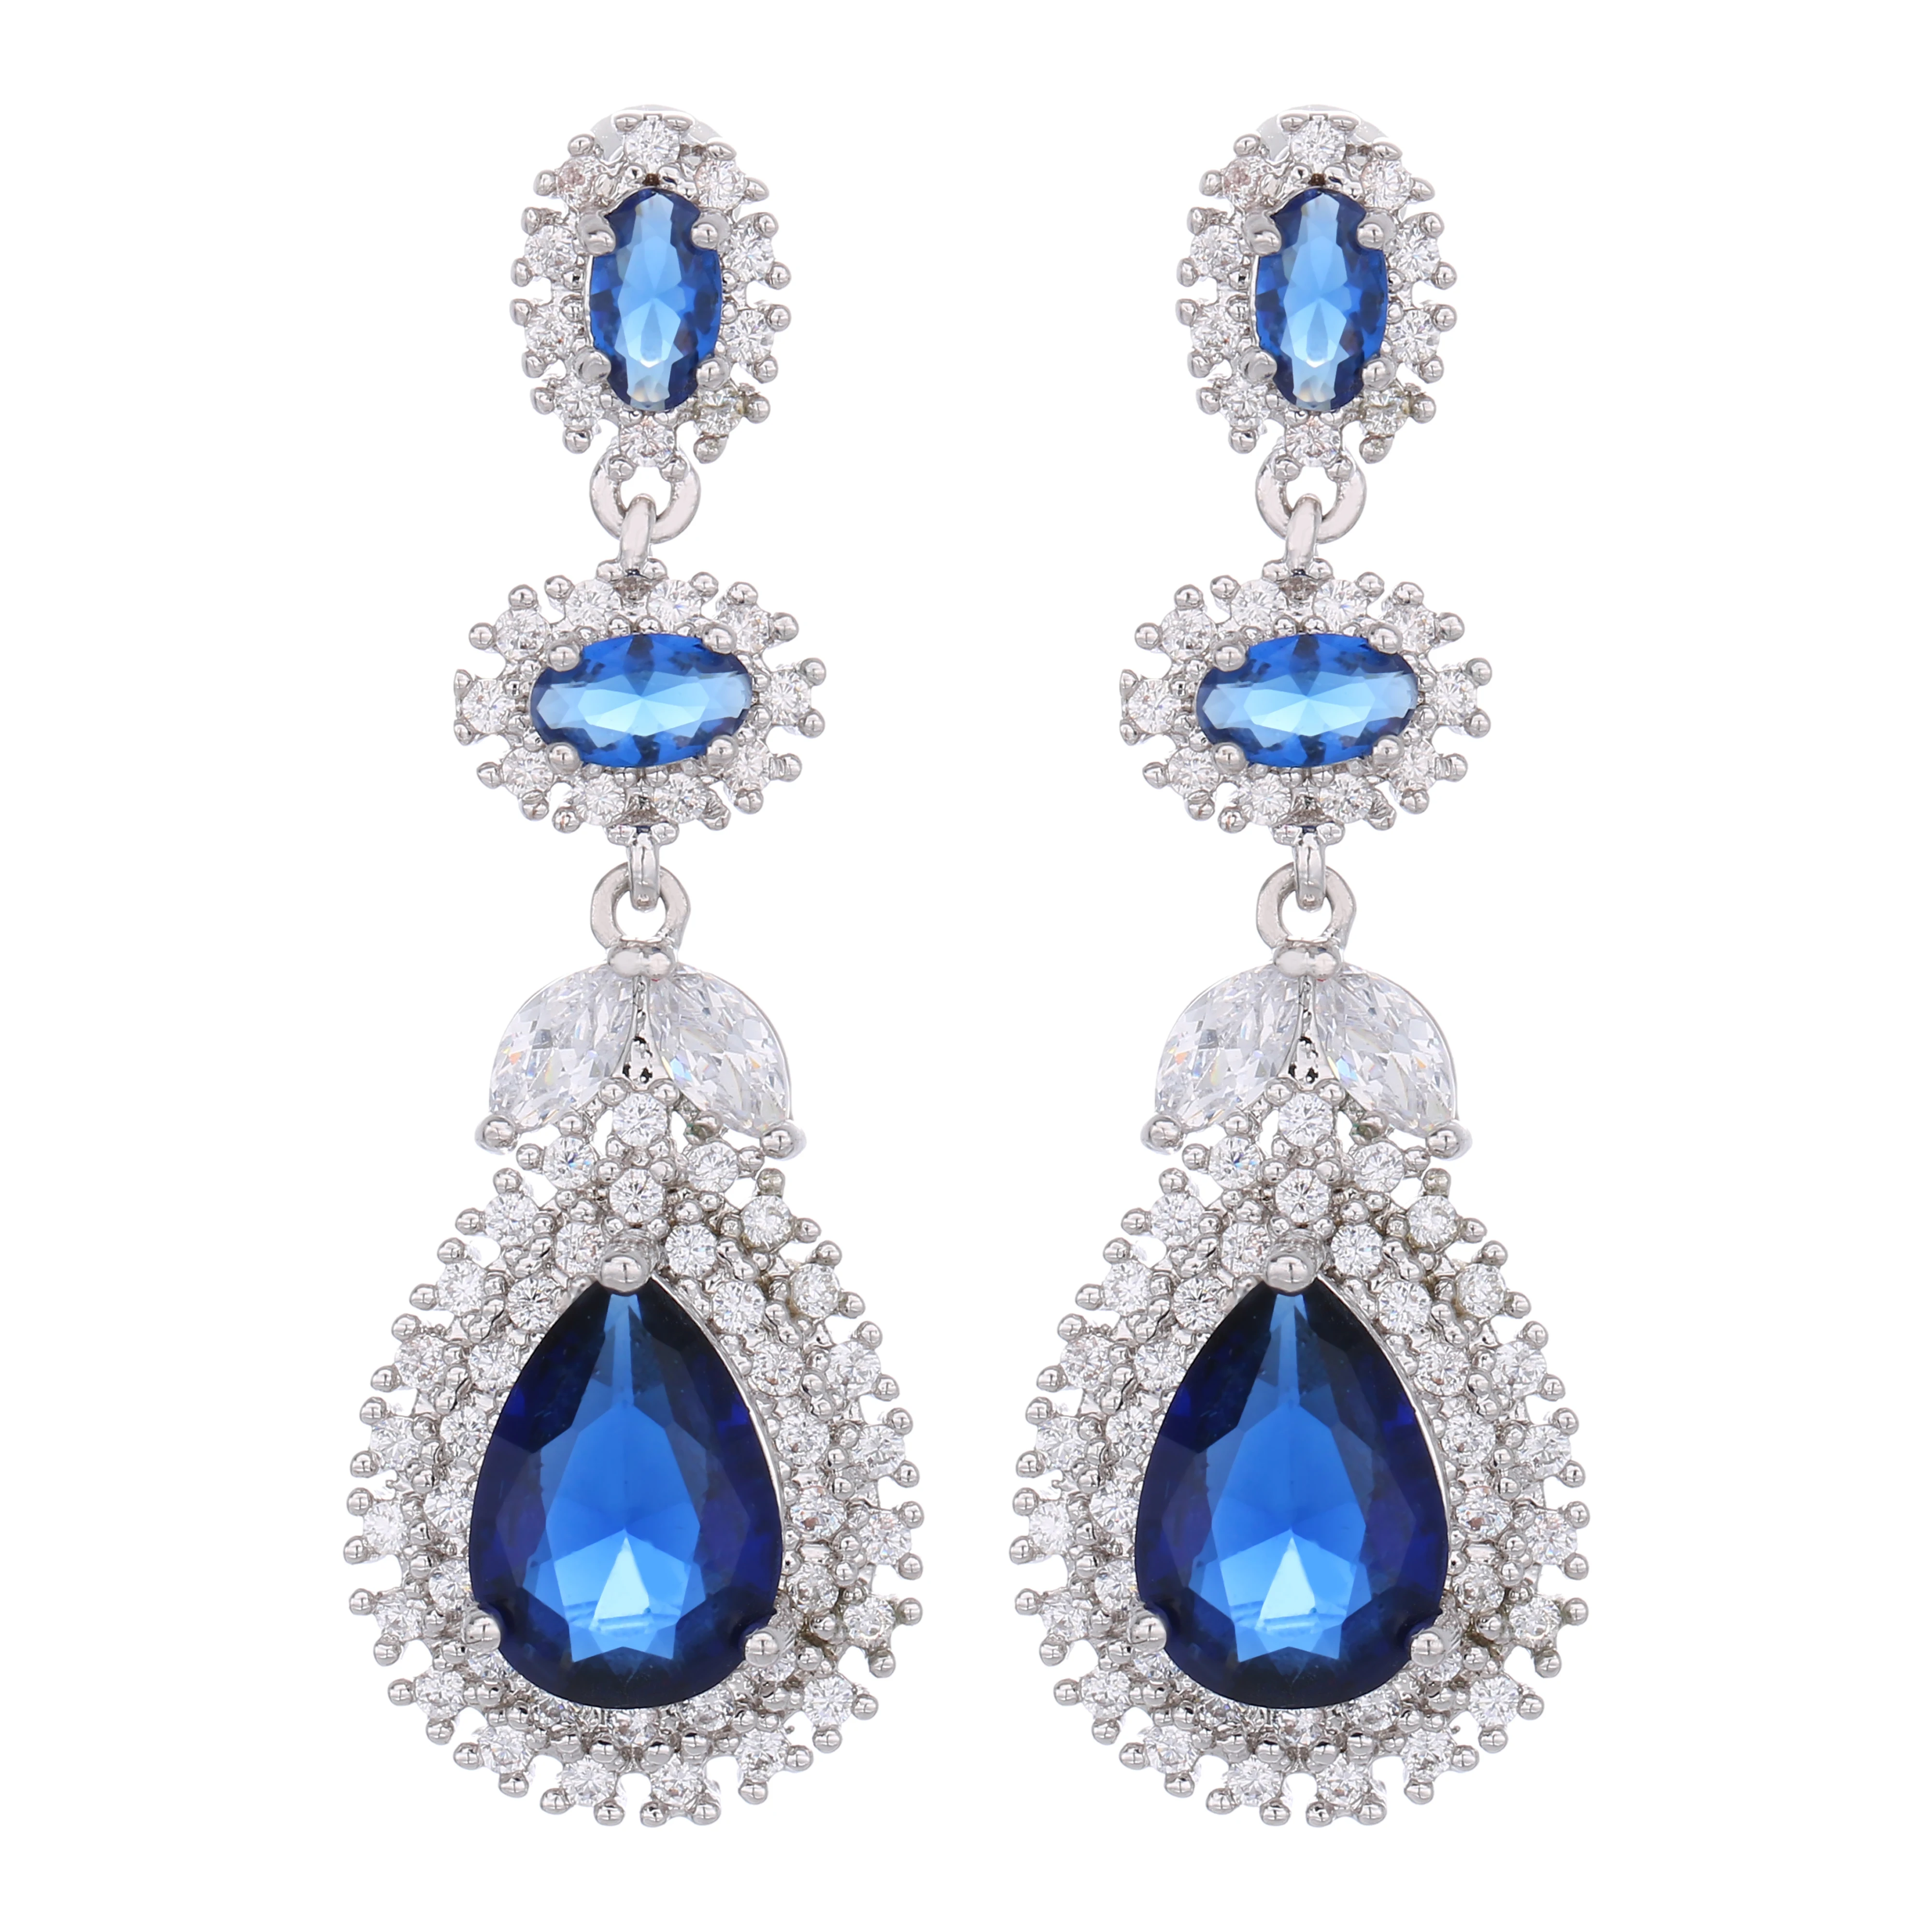 

Sapphire CZ Crystal Luxury Bridal Wedding Long Big Teardrop Earrings Jewelry For Women Gift